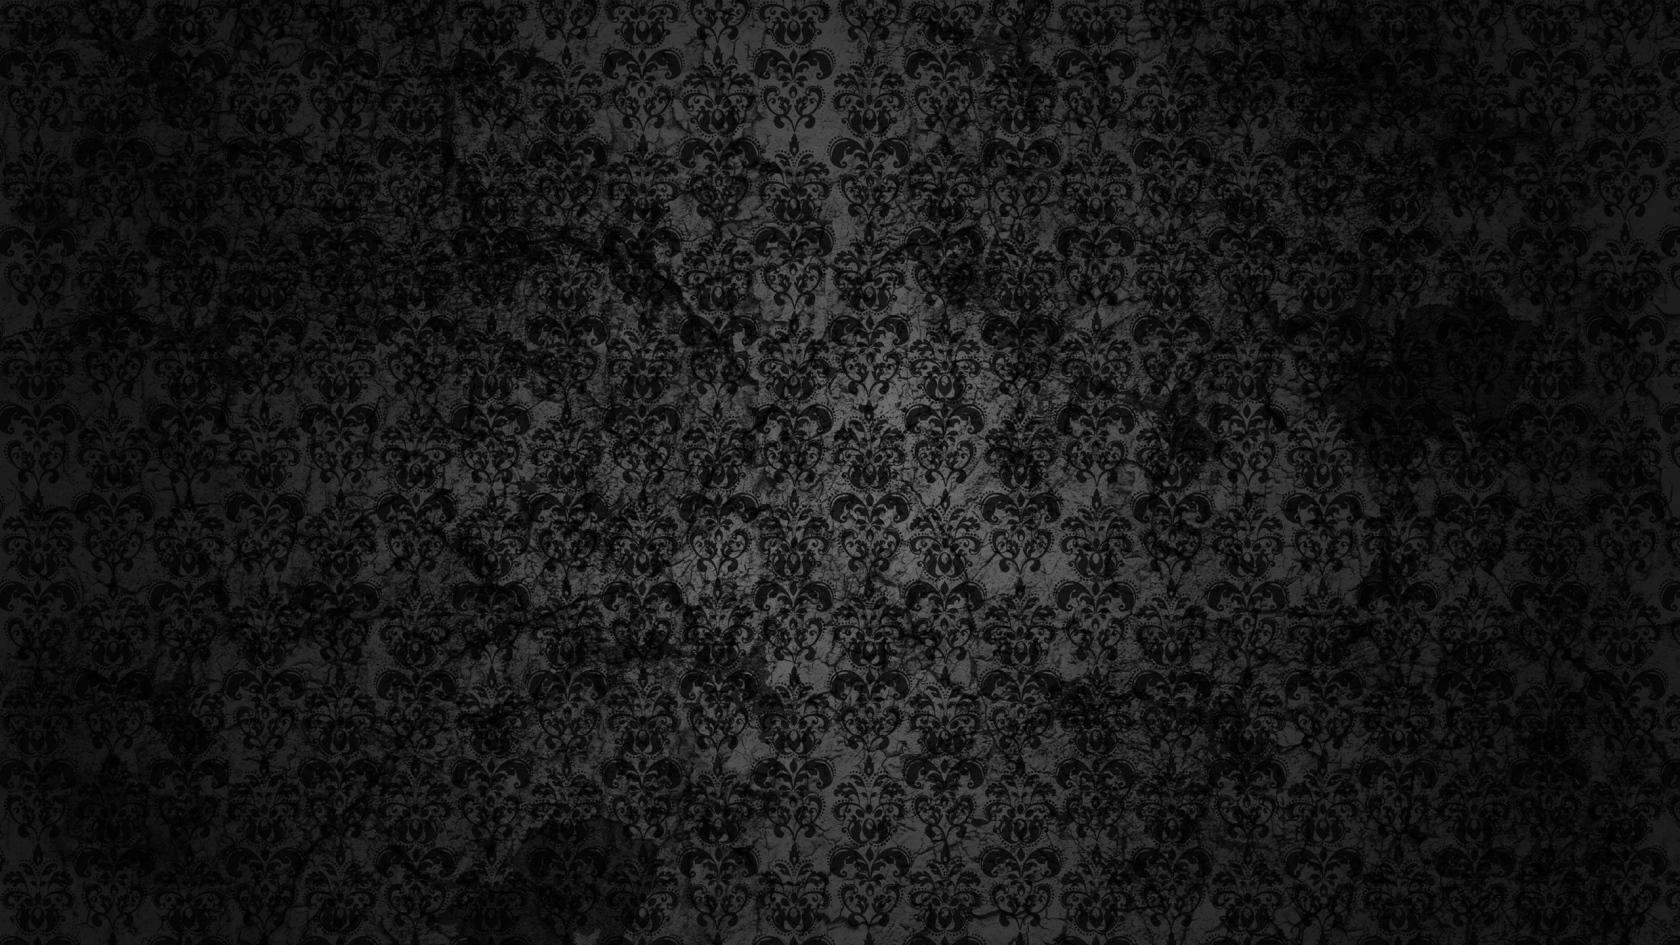 Black Floral Grunge for 1680 x 945 HDTV resolution